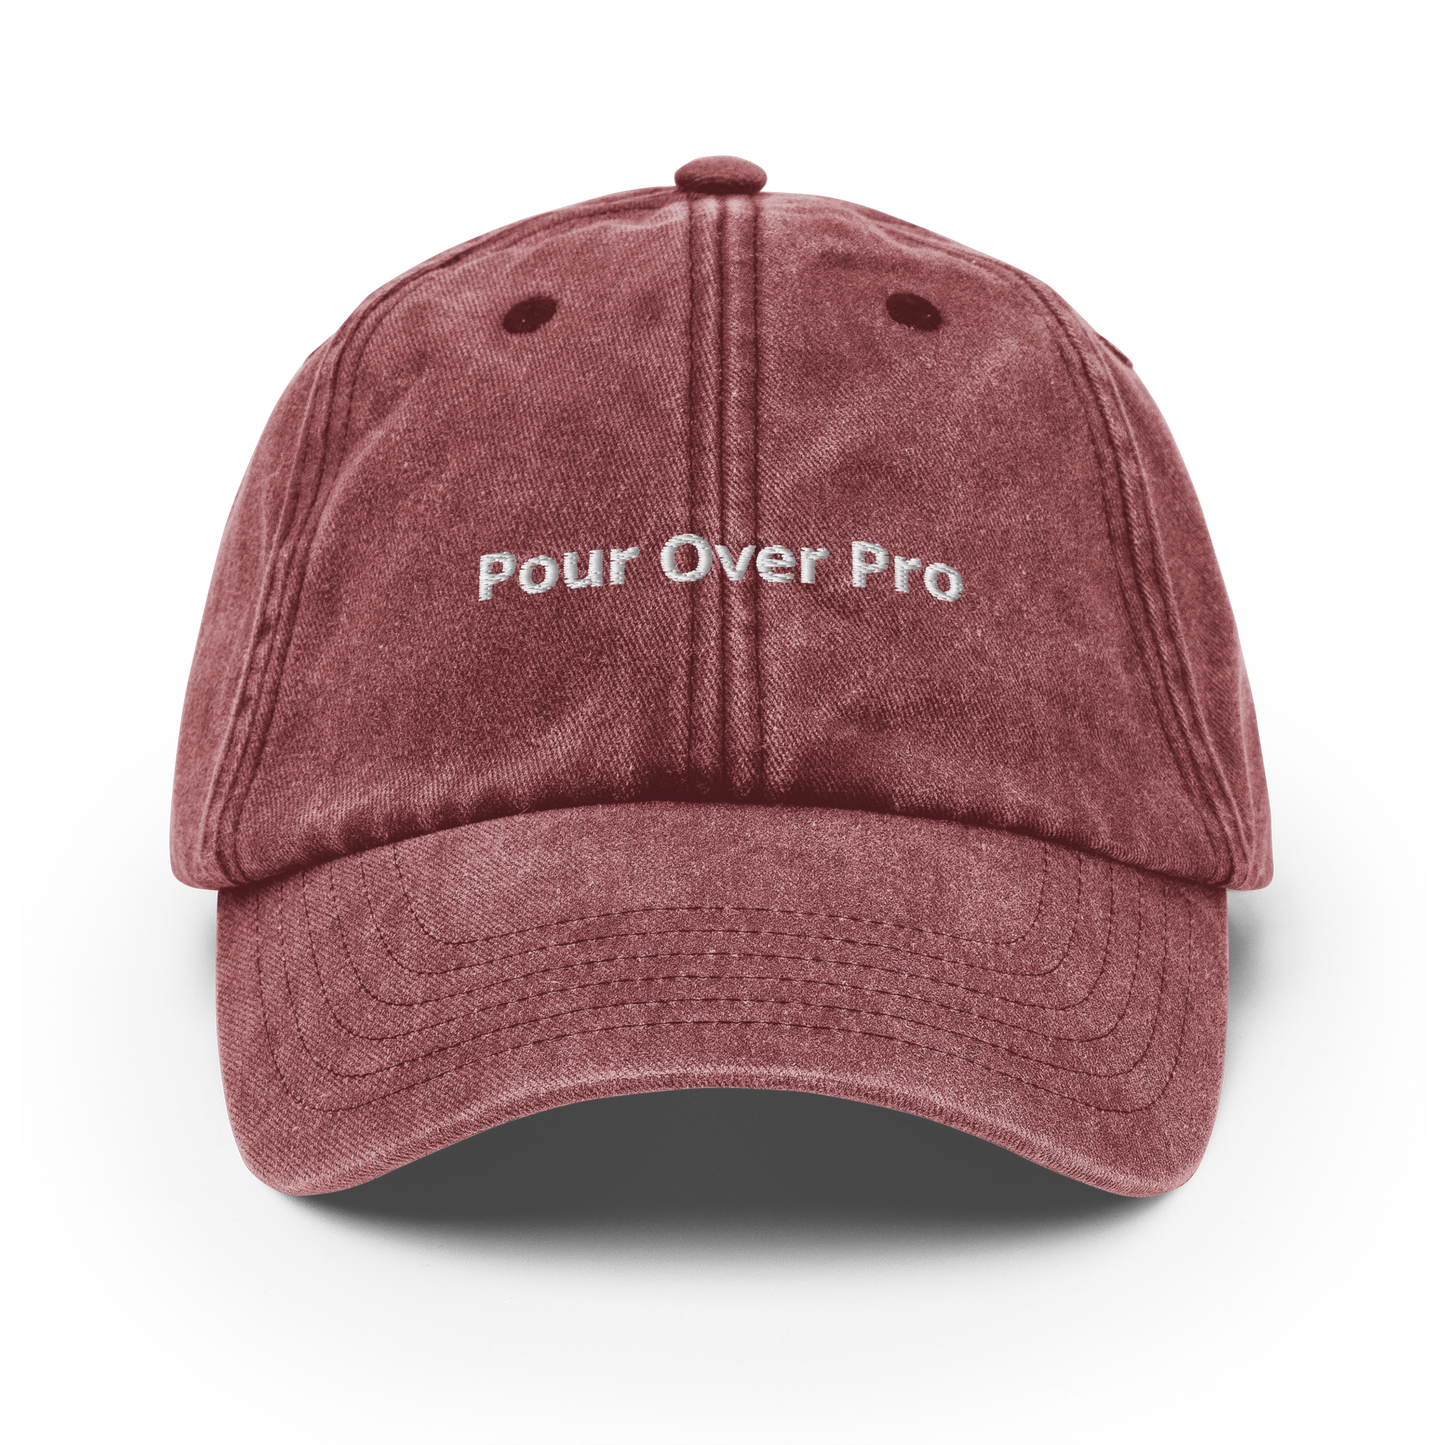 Pour Over Pro - Vintage Hat